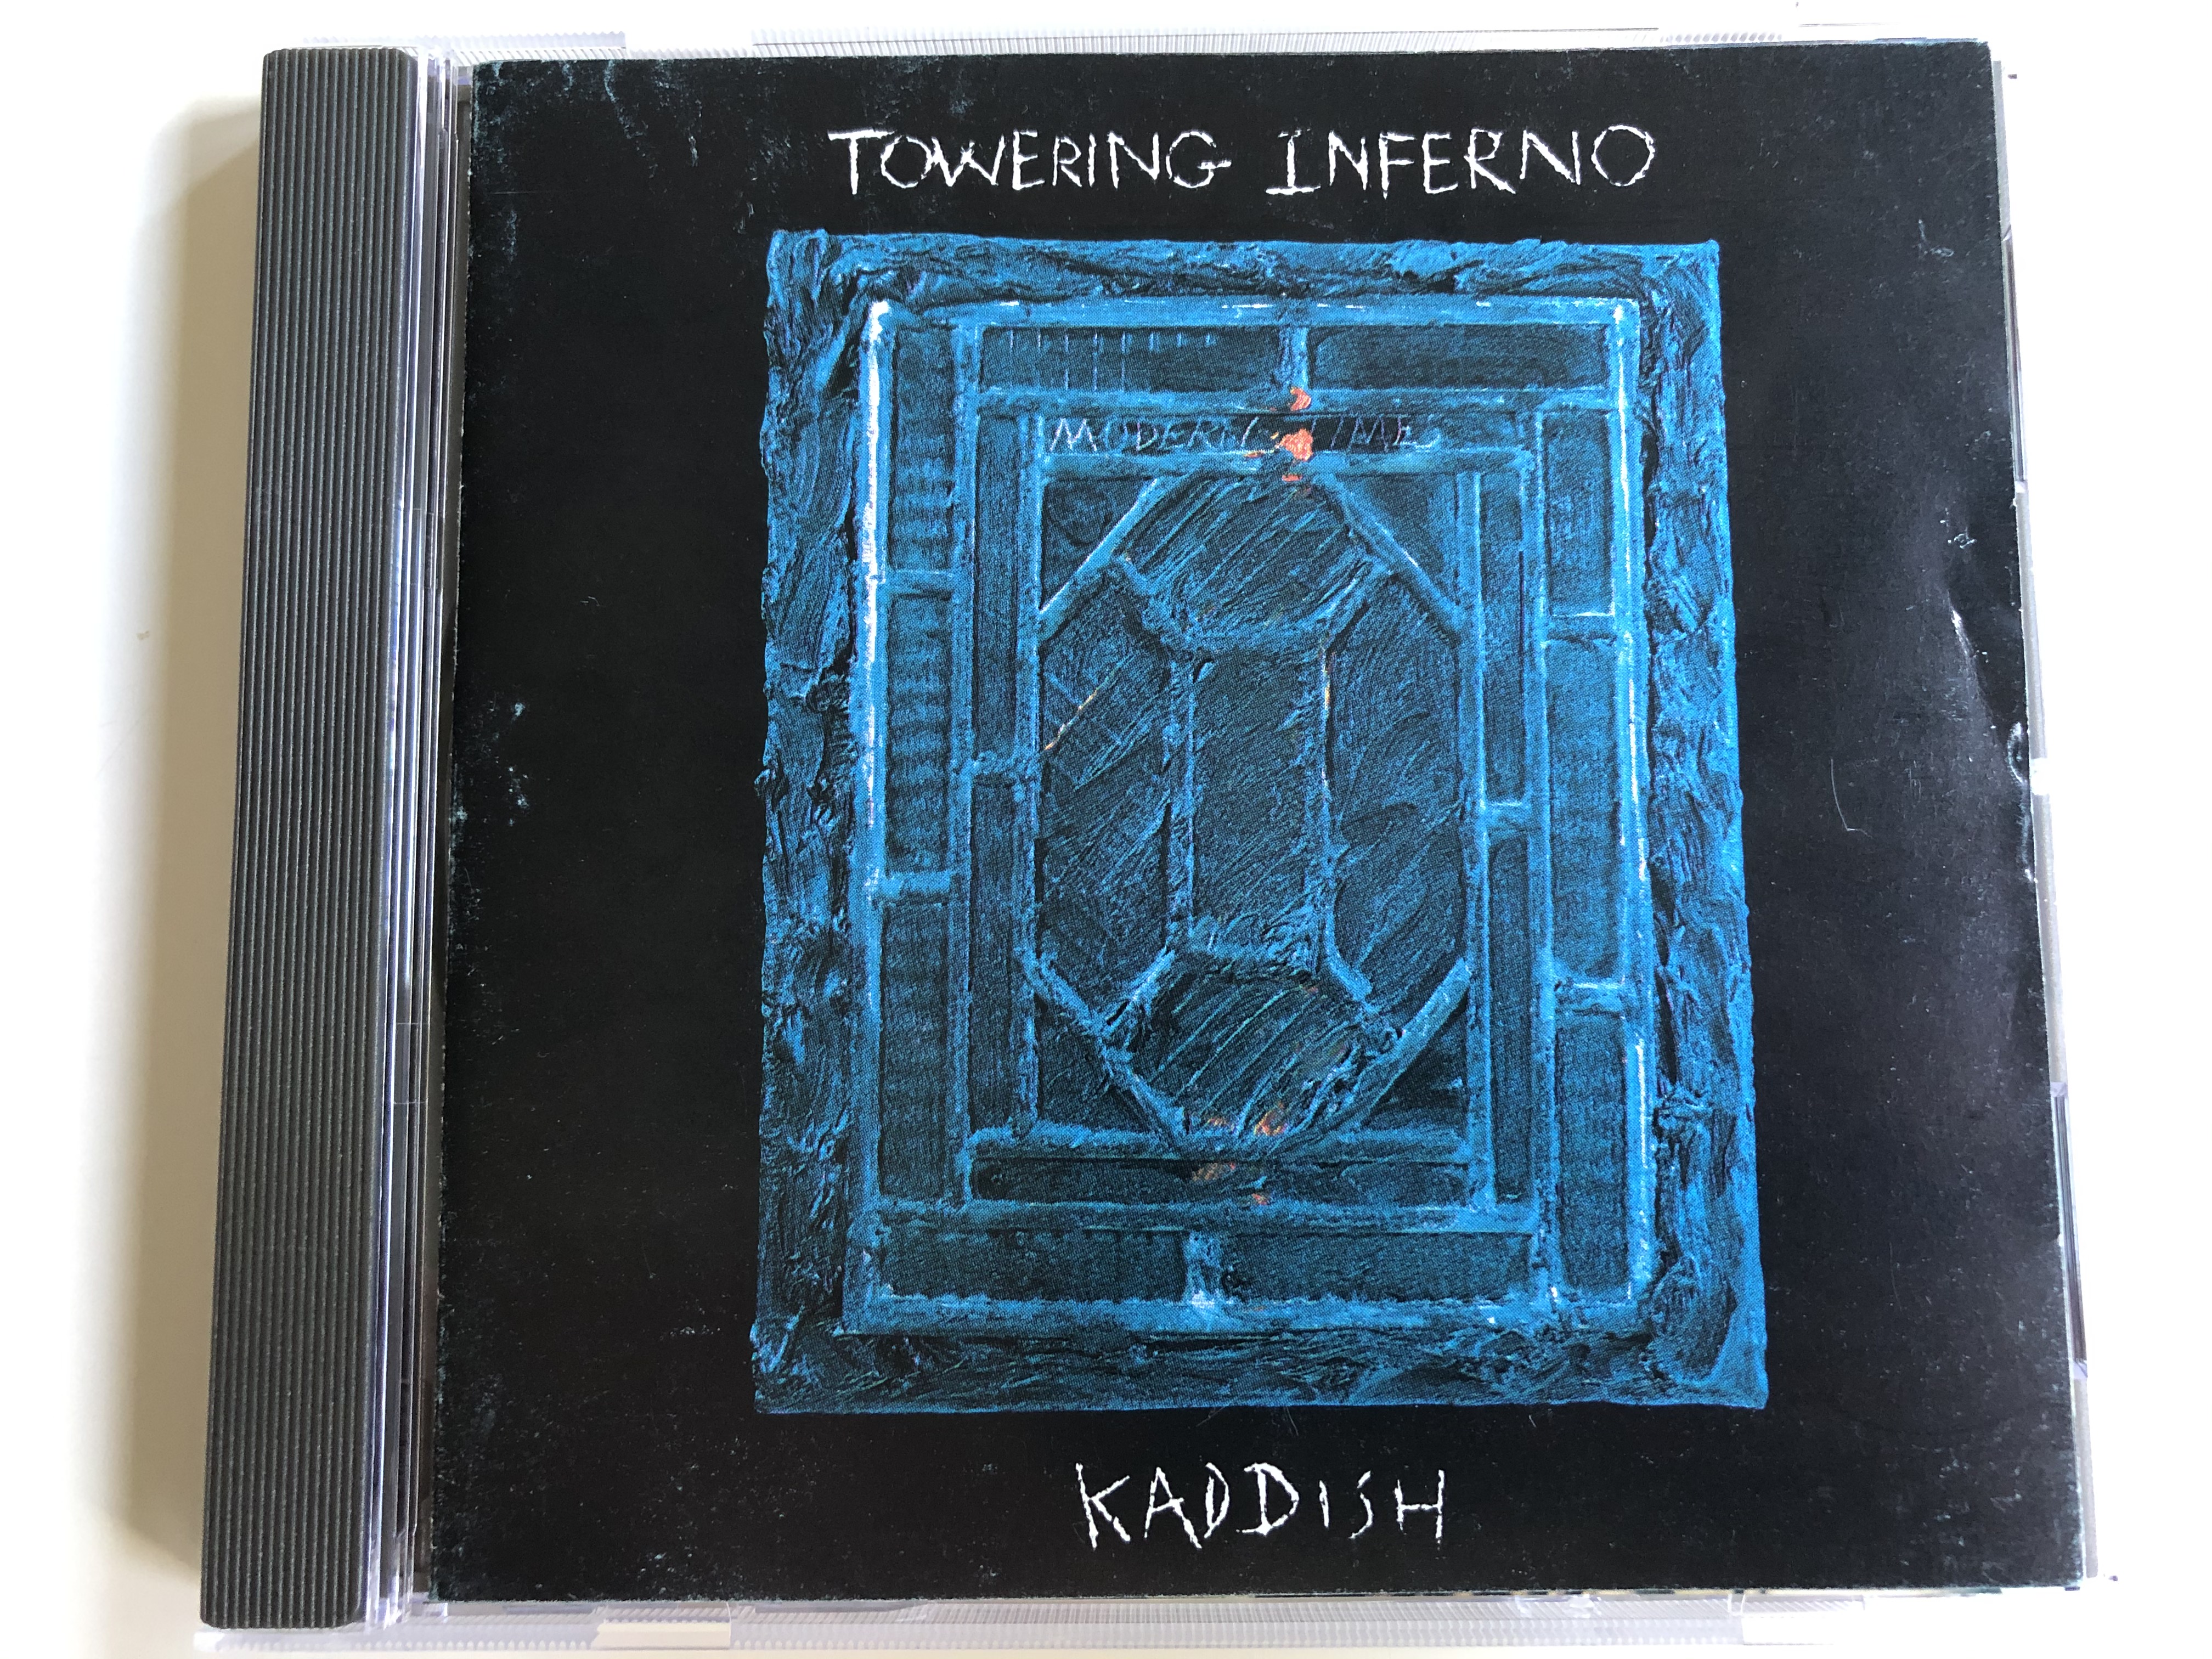 towering-inferno-kaddish-ti-records-audio-cd-1993-vbpl-016-1-.jpg